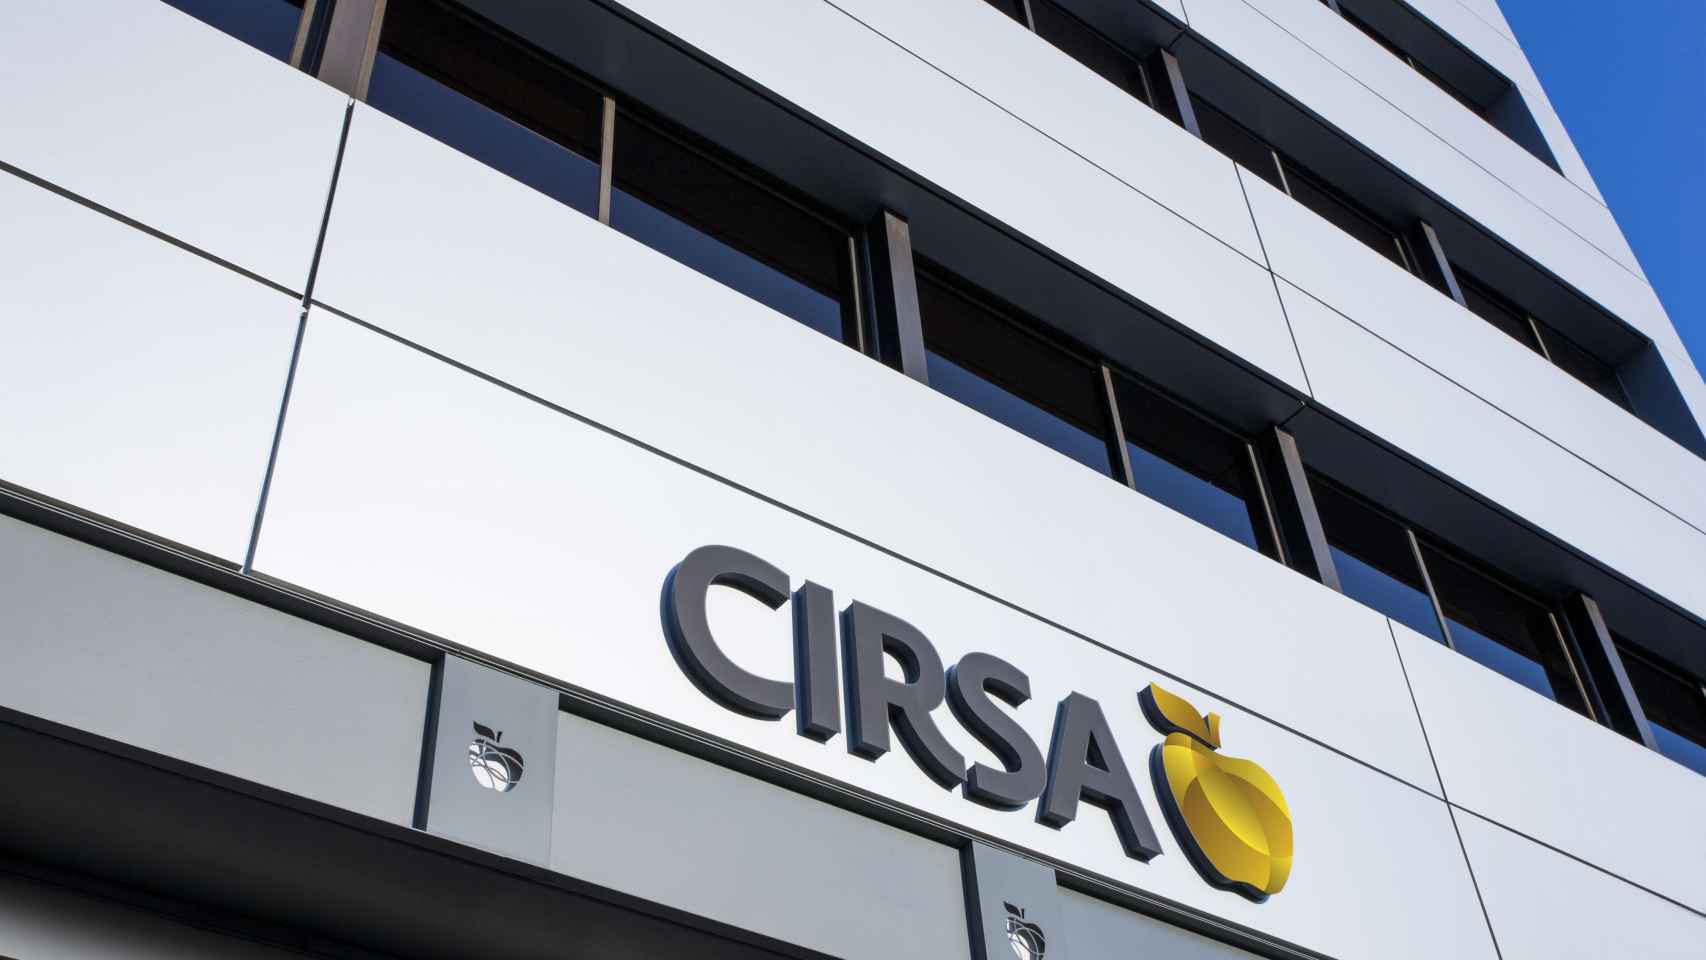 Imagen de la sede central de Cirsa, situada en la ciudad de Terrassa